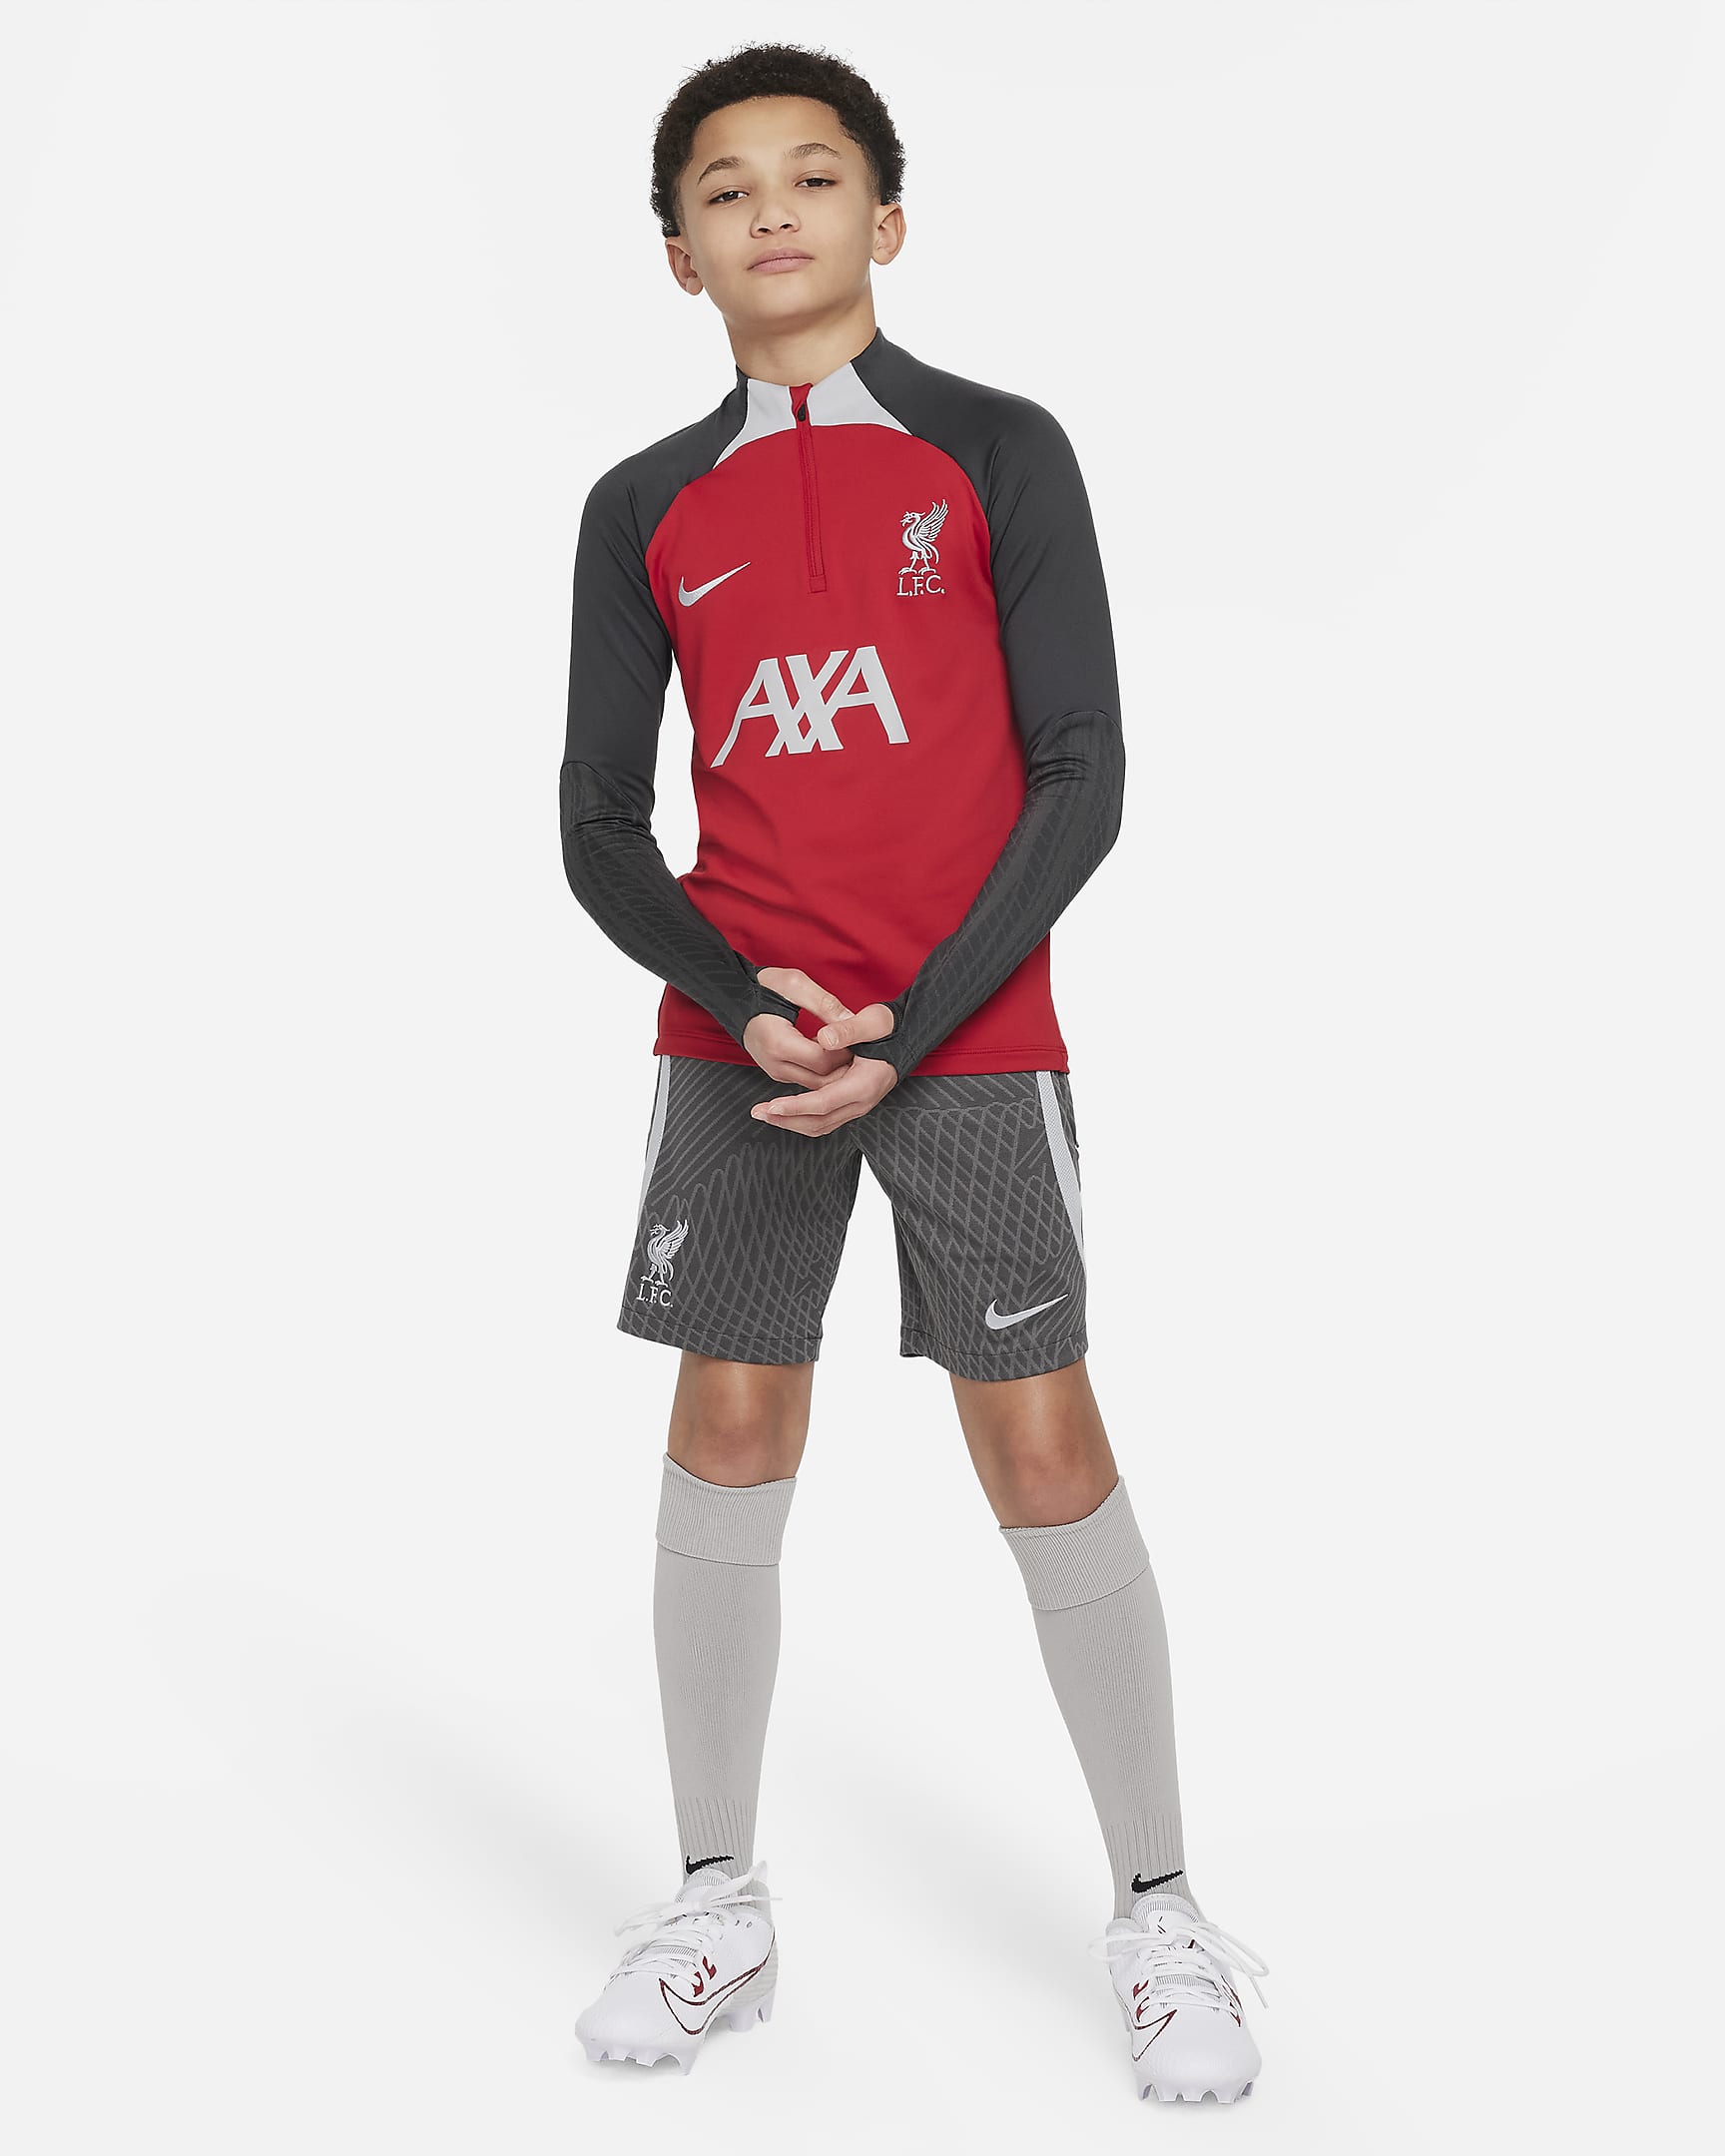 Liverpool F.C. Strike Older Kids' Nike Dri-FIT Football Drill Top. Nike UK